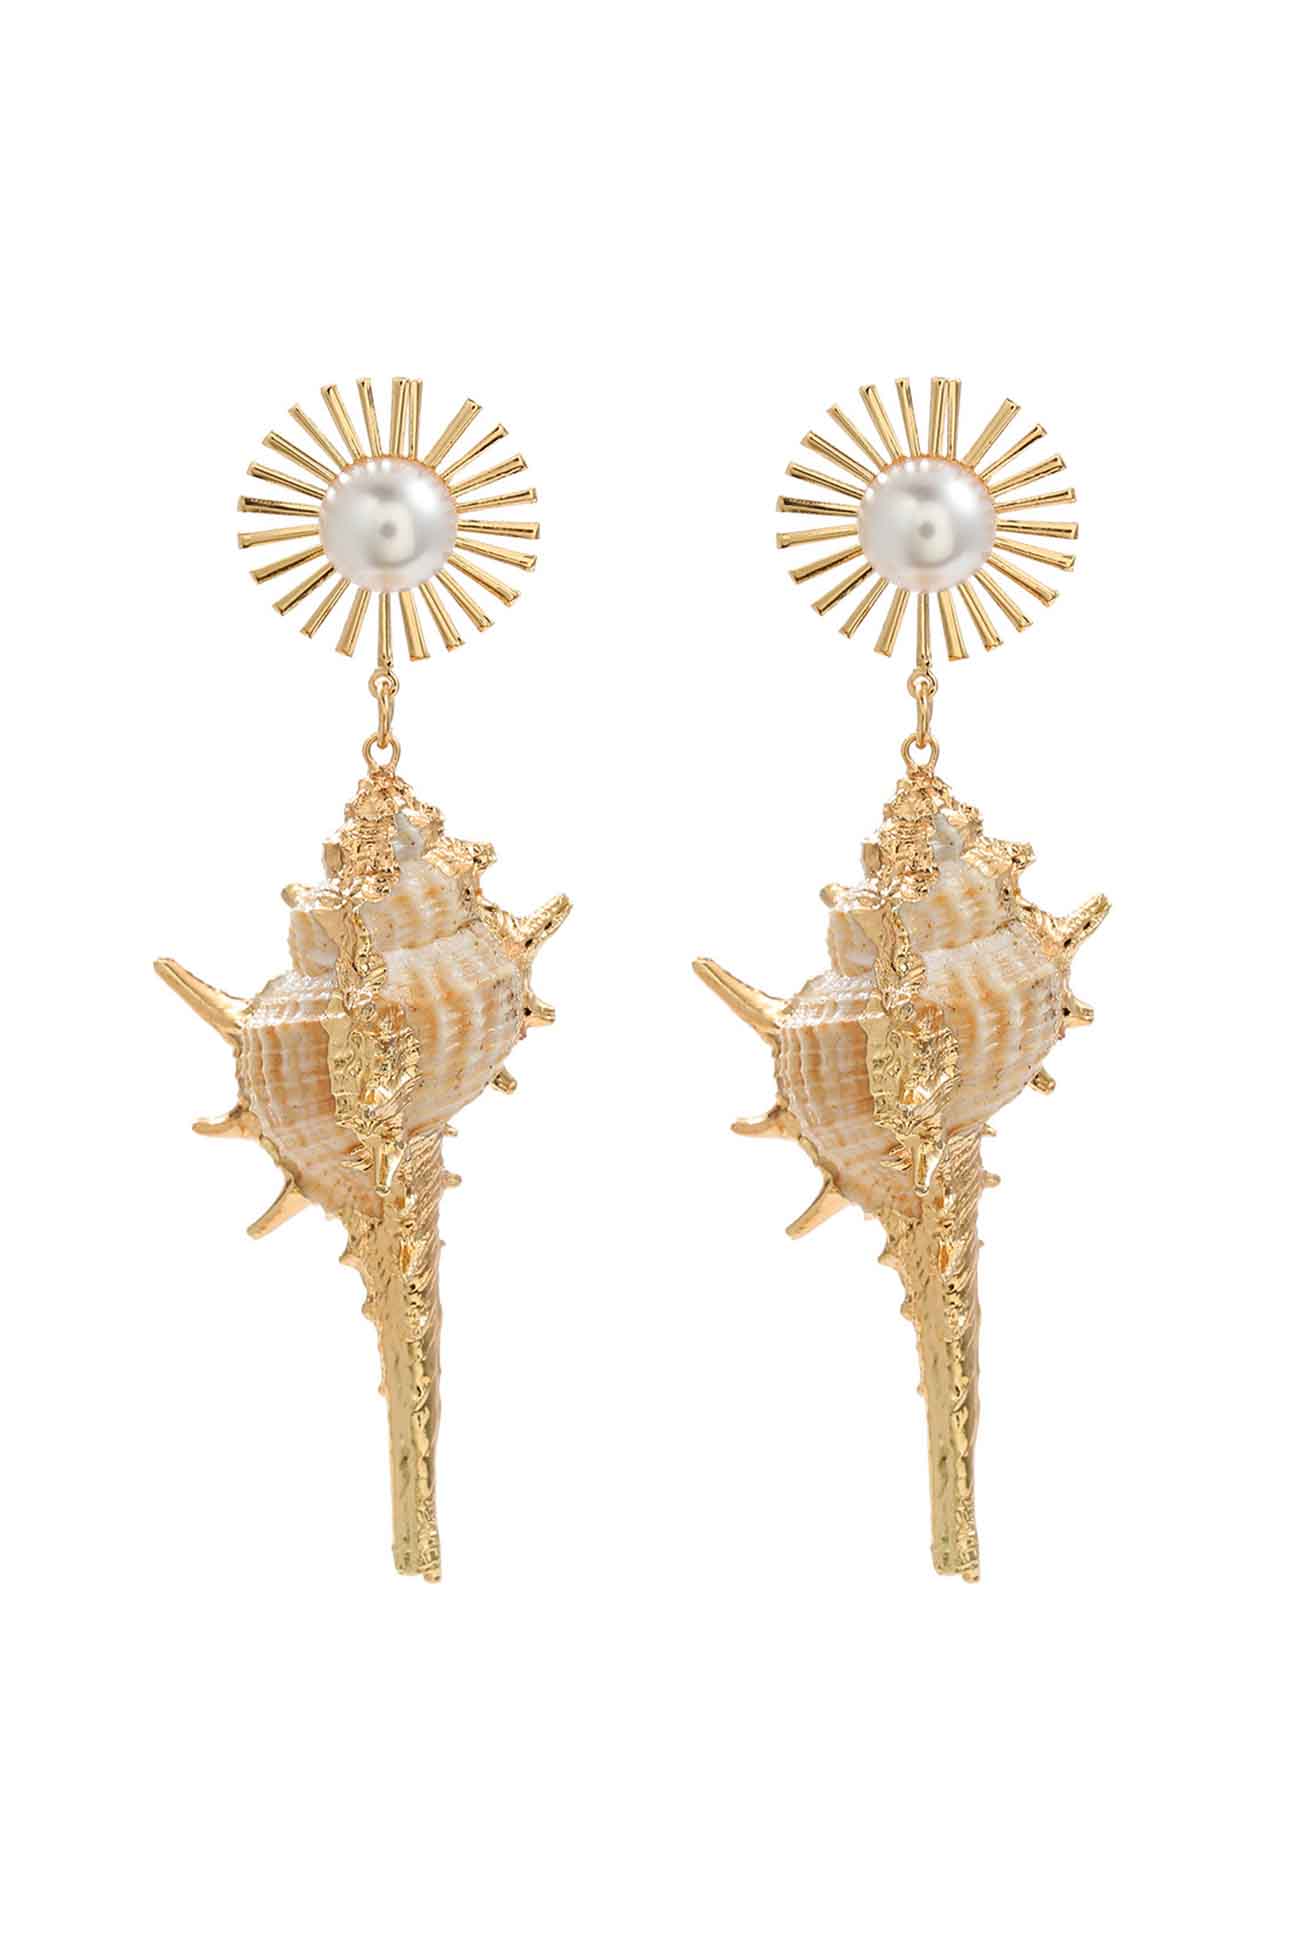 Flytonn-Valentine's Day gift Shell Pearl Floral Earrings